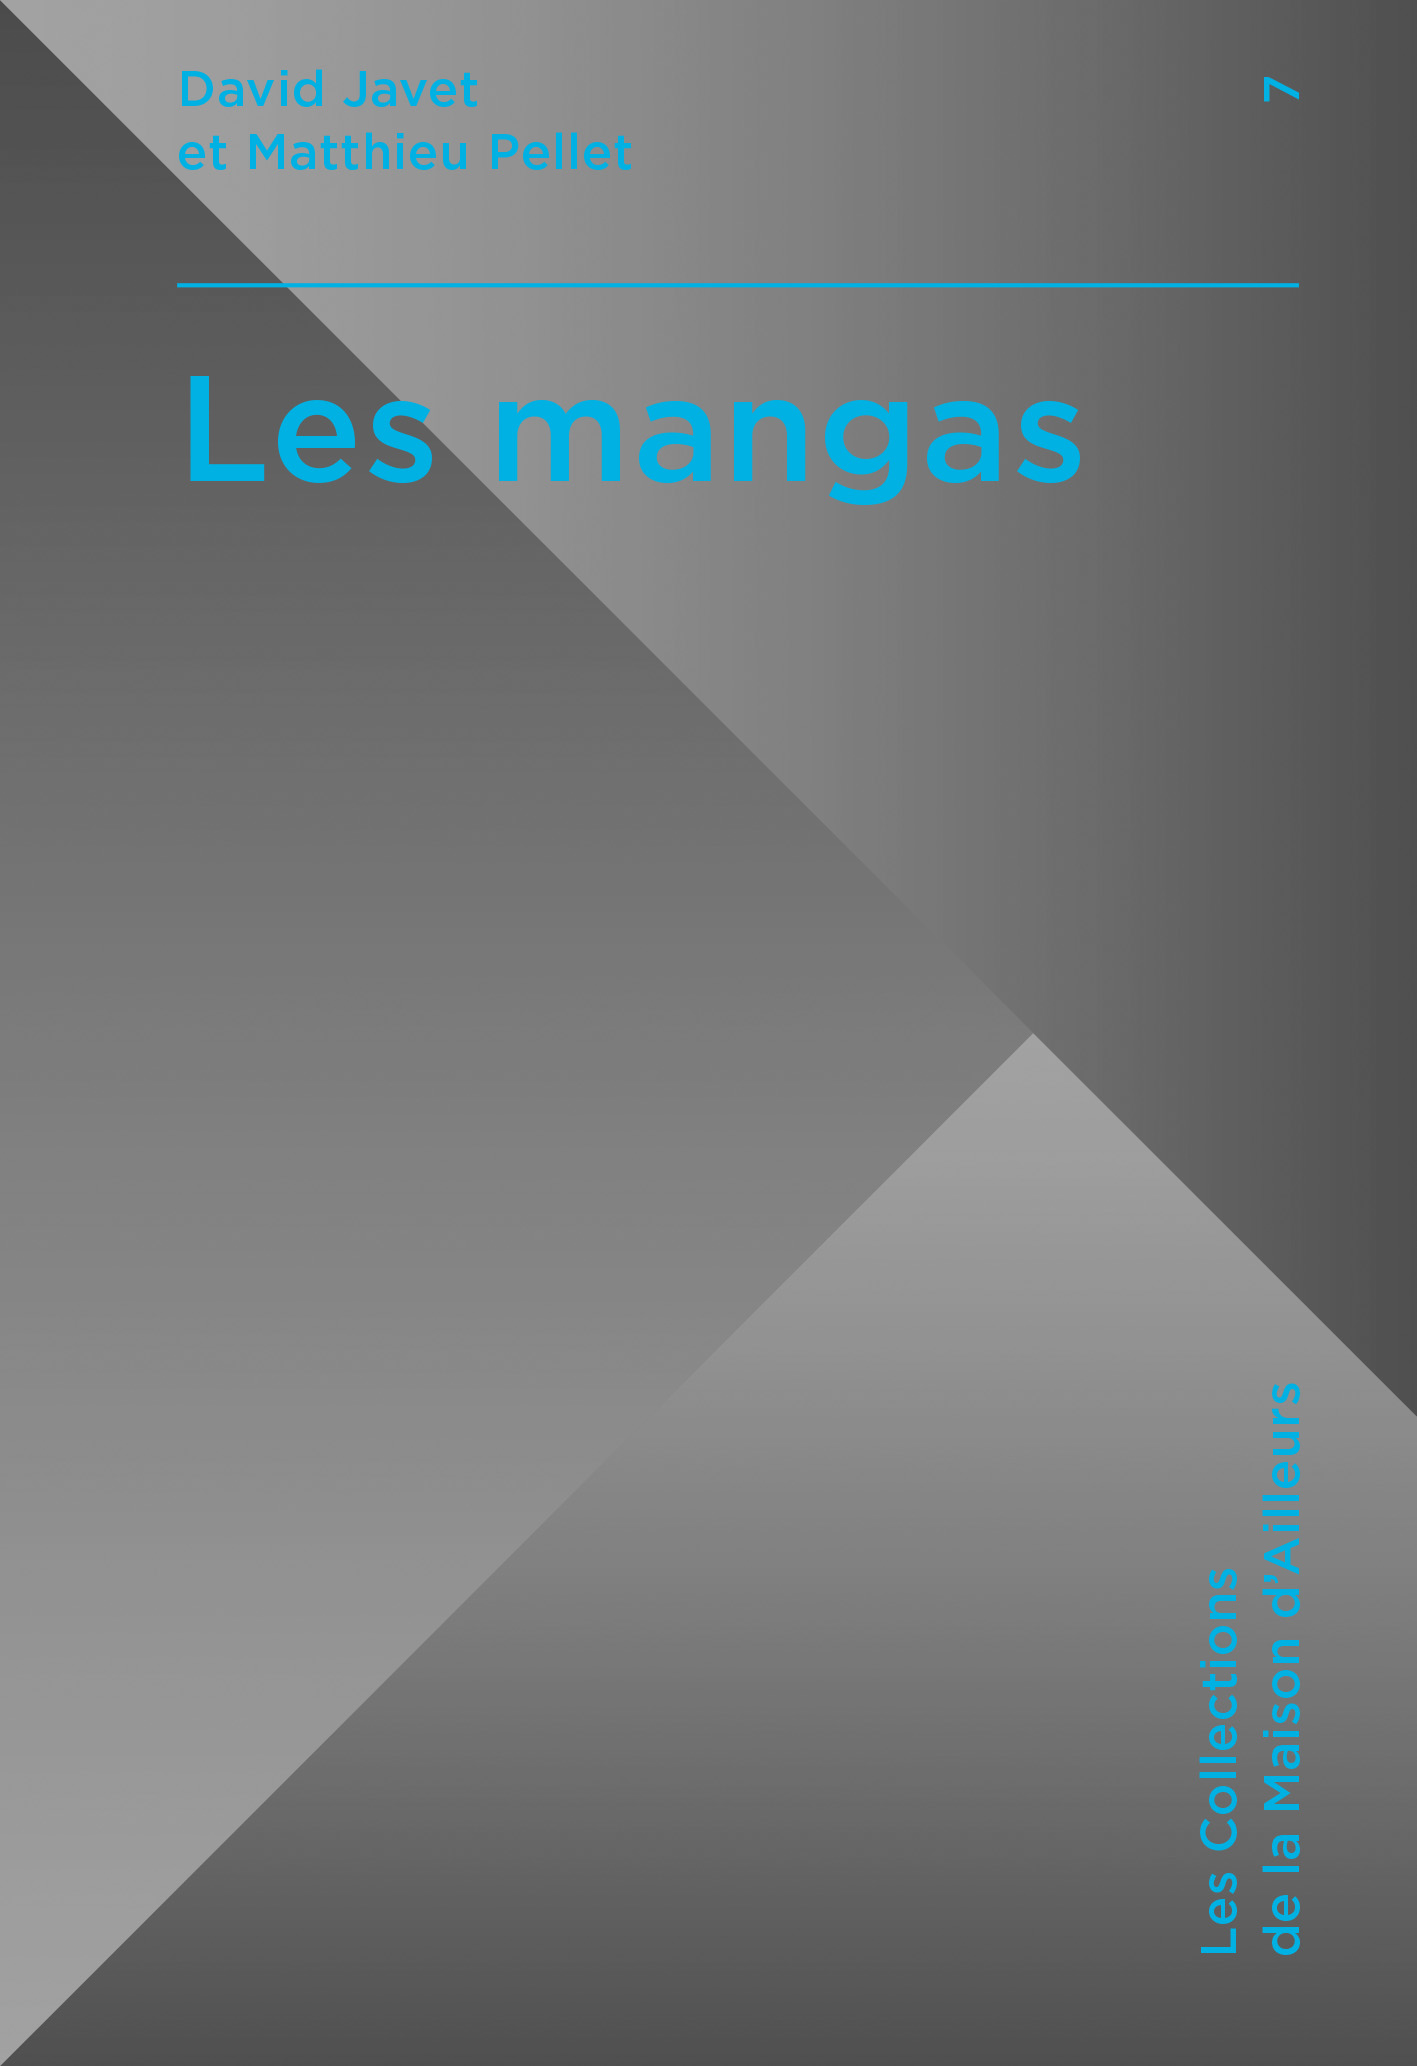 2. Couv_LesMangas.jpg (LesMangas_Cover-Prod.indd)